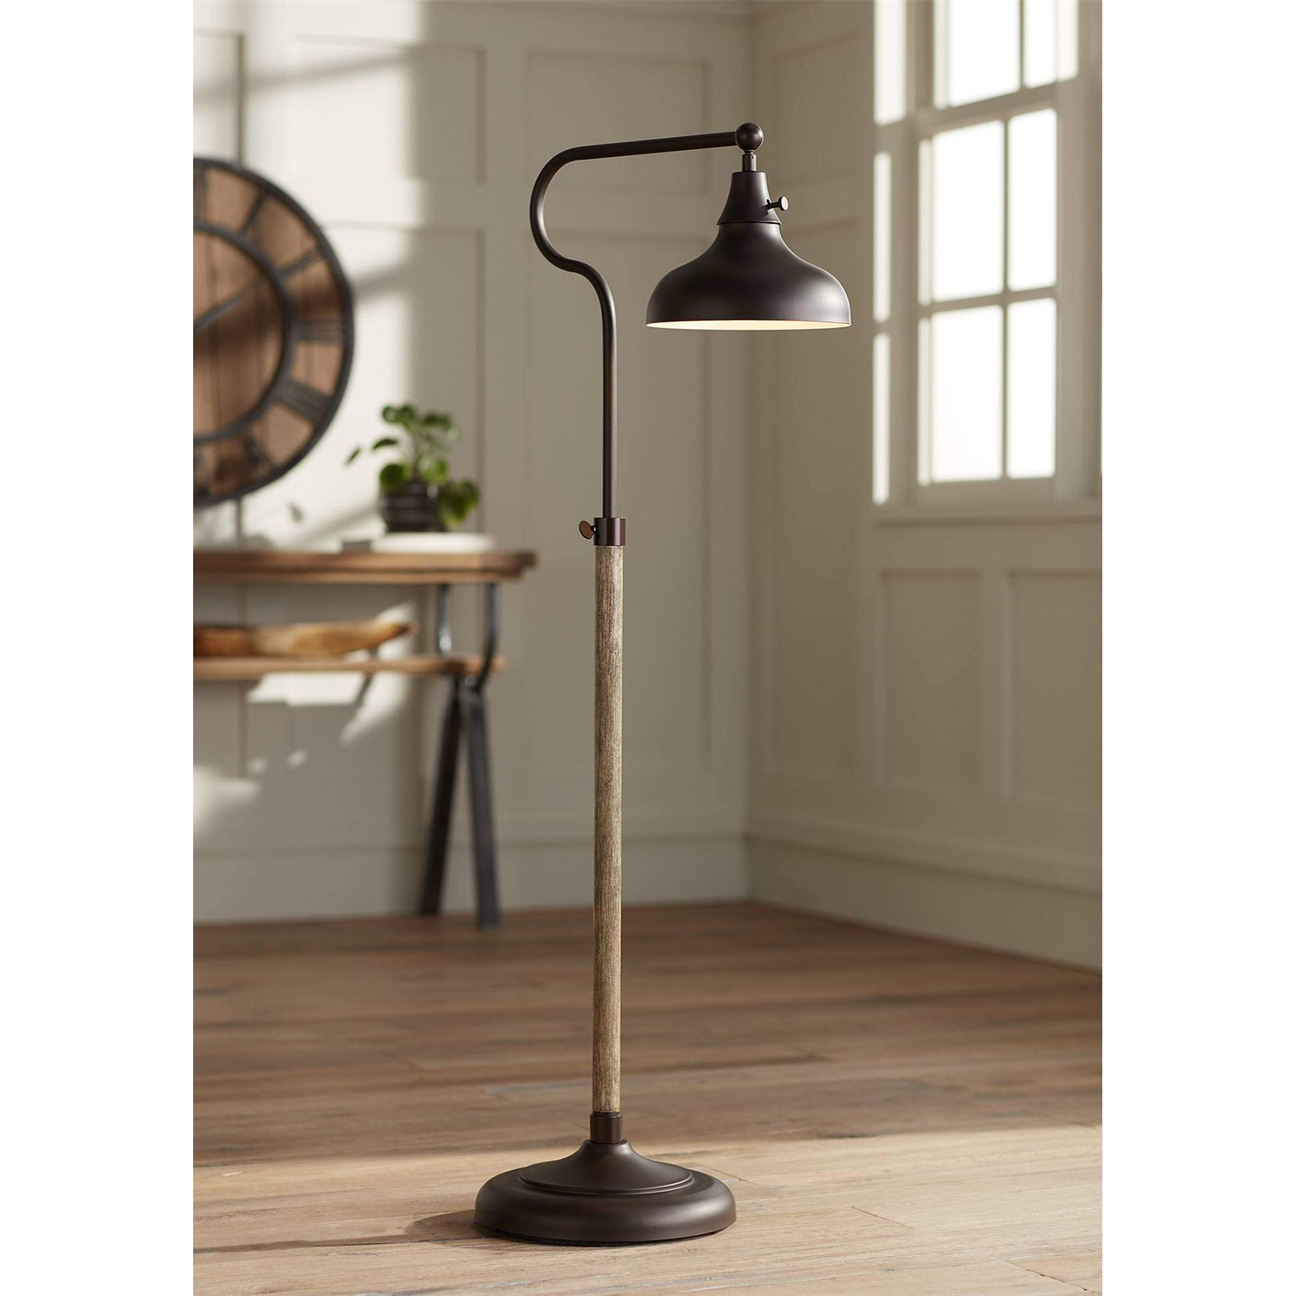 American Floor Lamp Living Room Lamp Retro Adjustable Bronze Wood Grain Floor Lamp